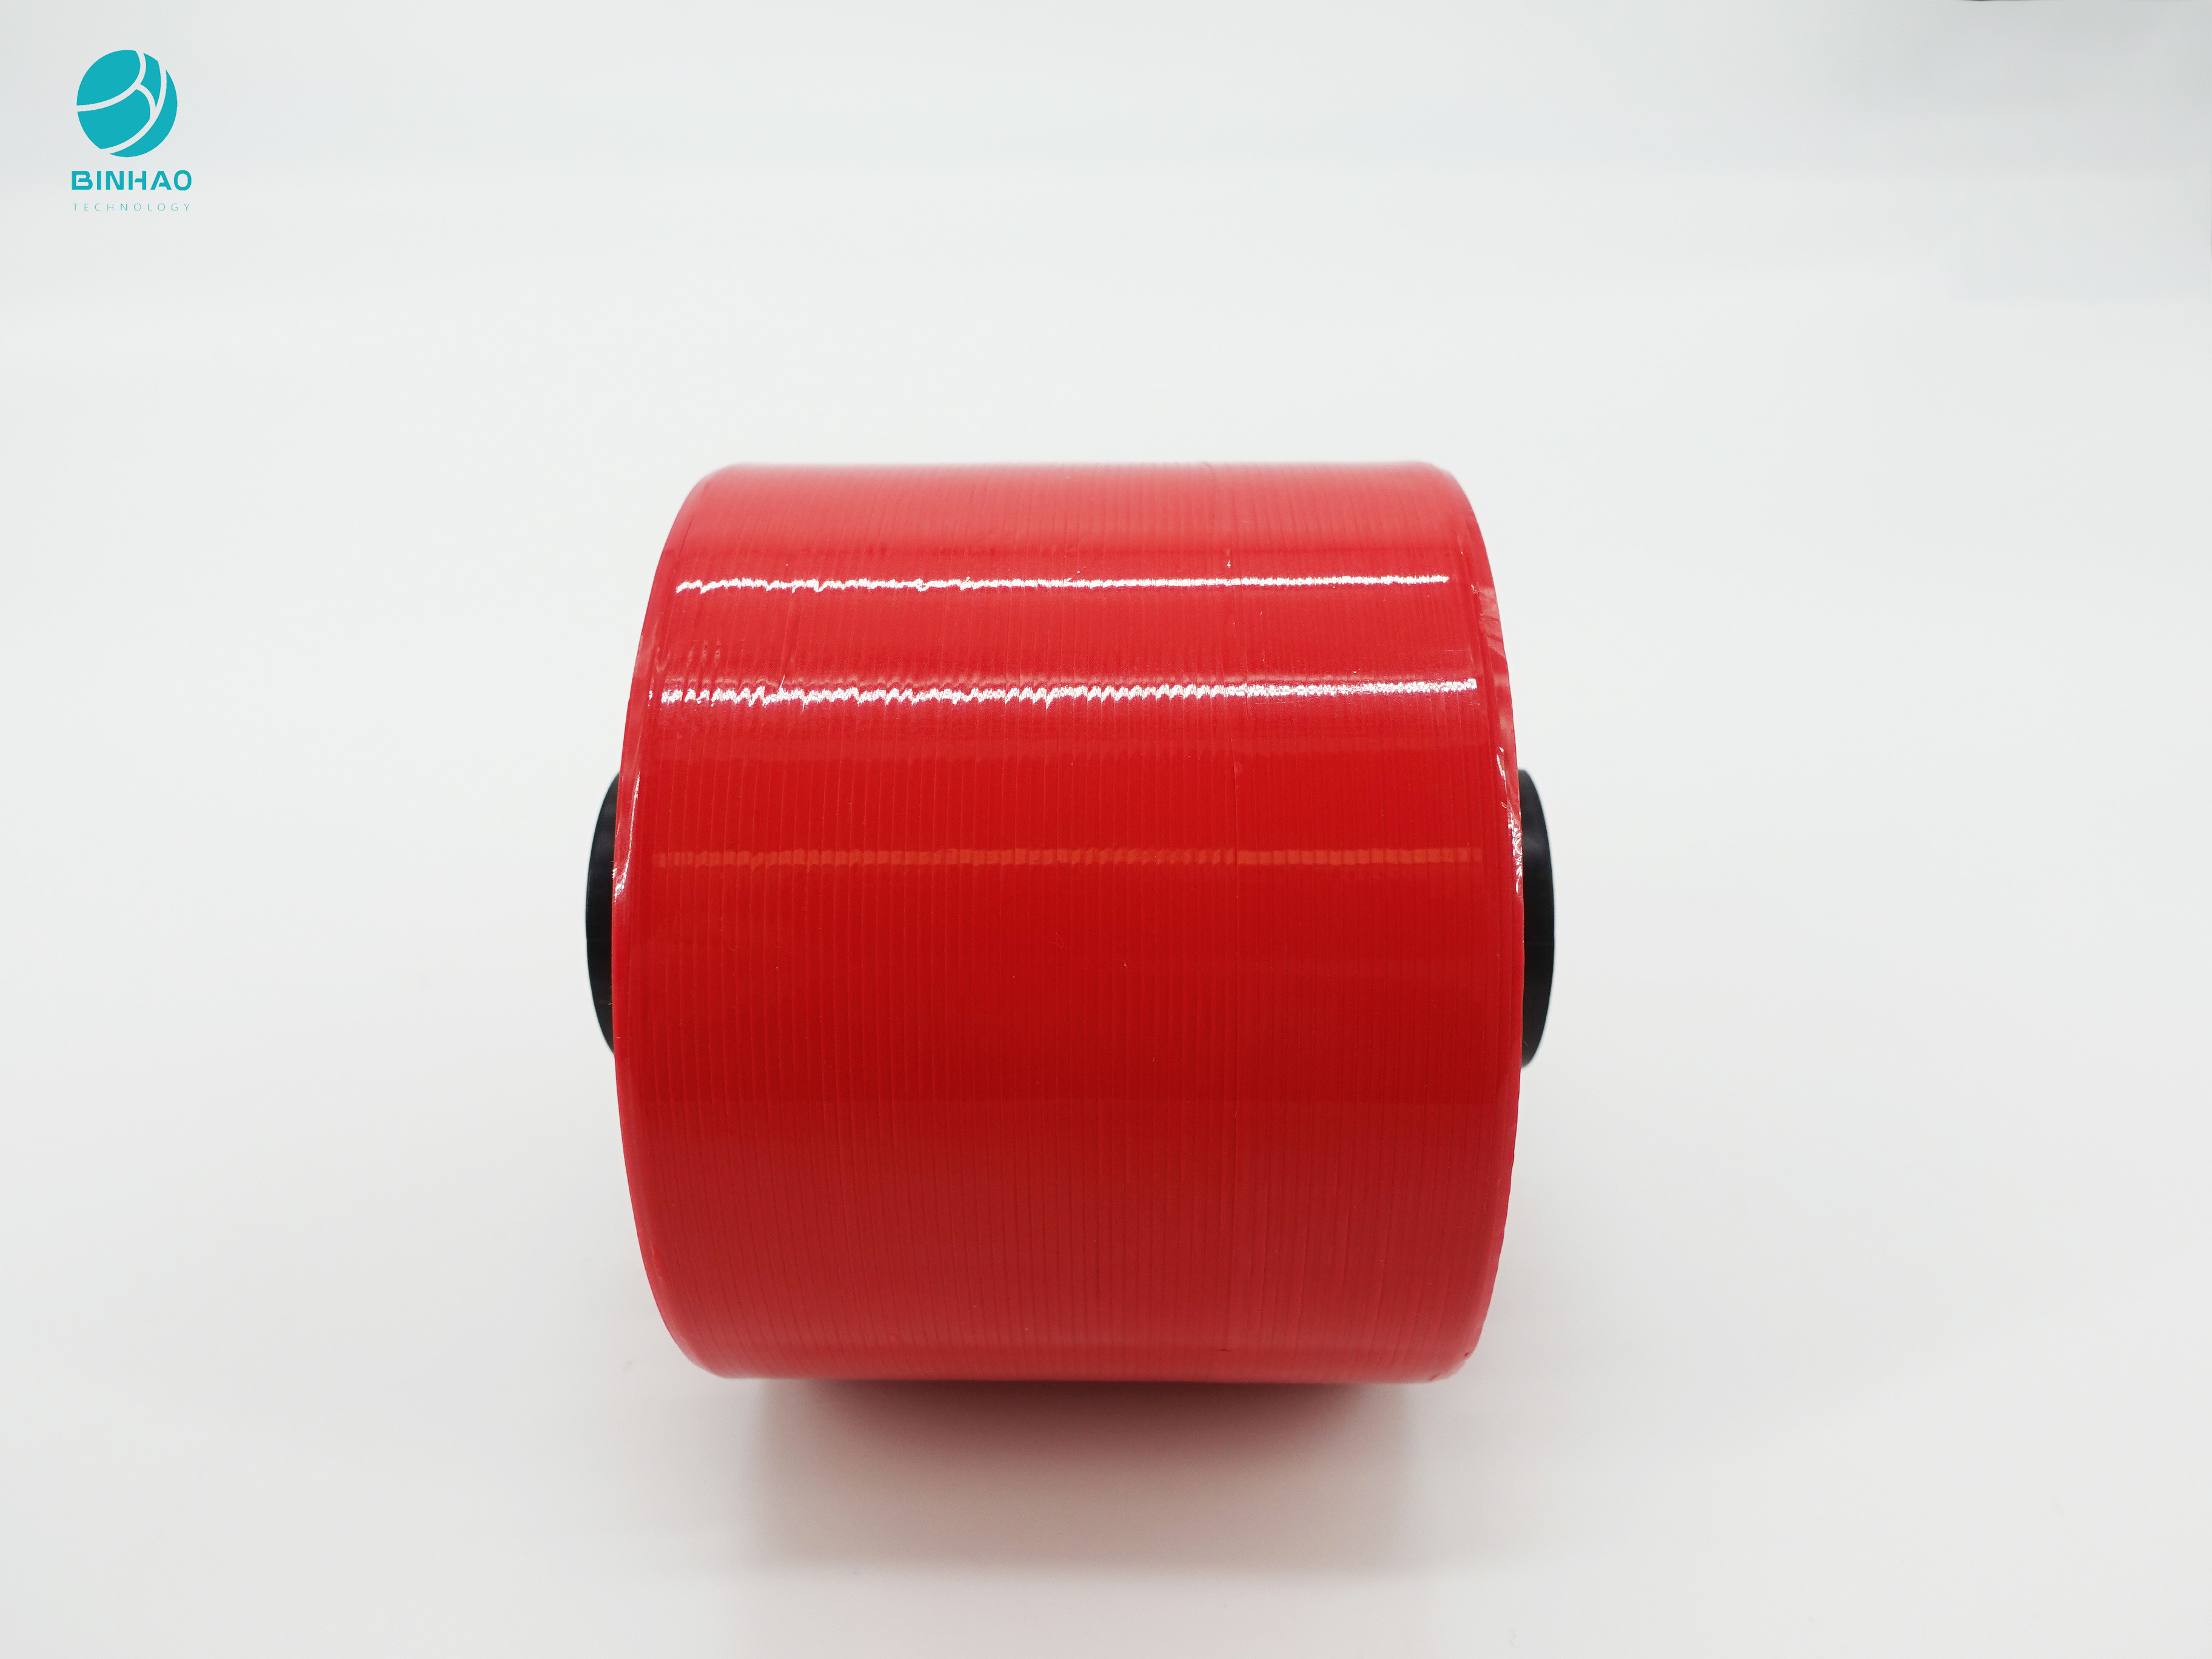 αυτοκόλλητη προσαρμοσμένη δάκρυ ταινία φακέλων 3.5mm φωτεινή κόκκινη για τη συσκευασία FMCG